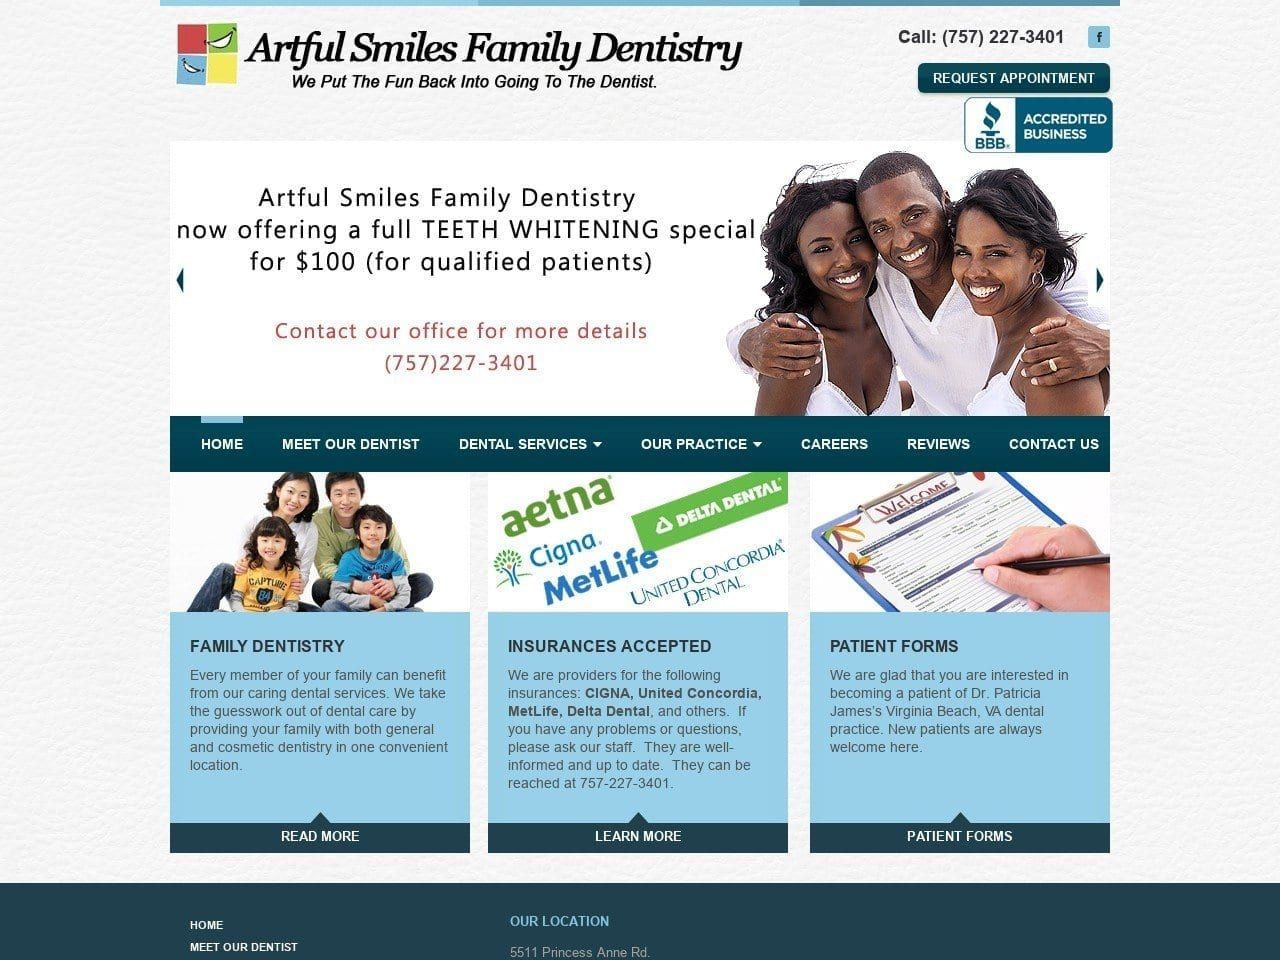 Artful Smiles Website Screenshot from artfulsmilesdentistry.com